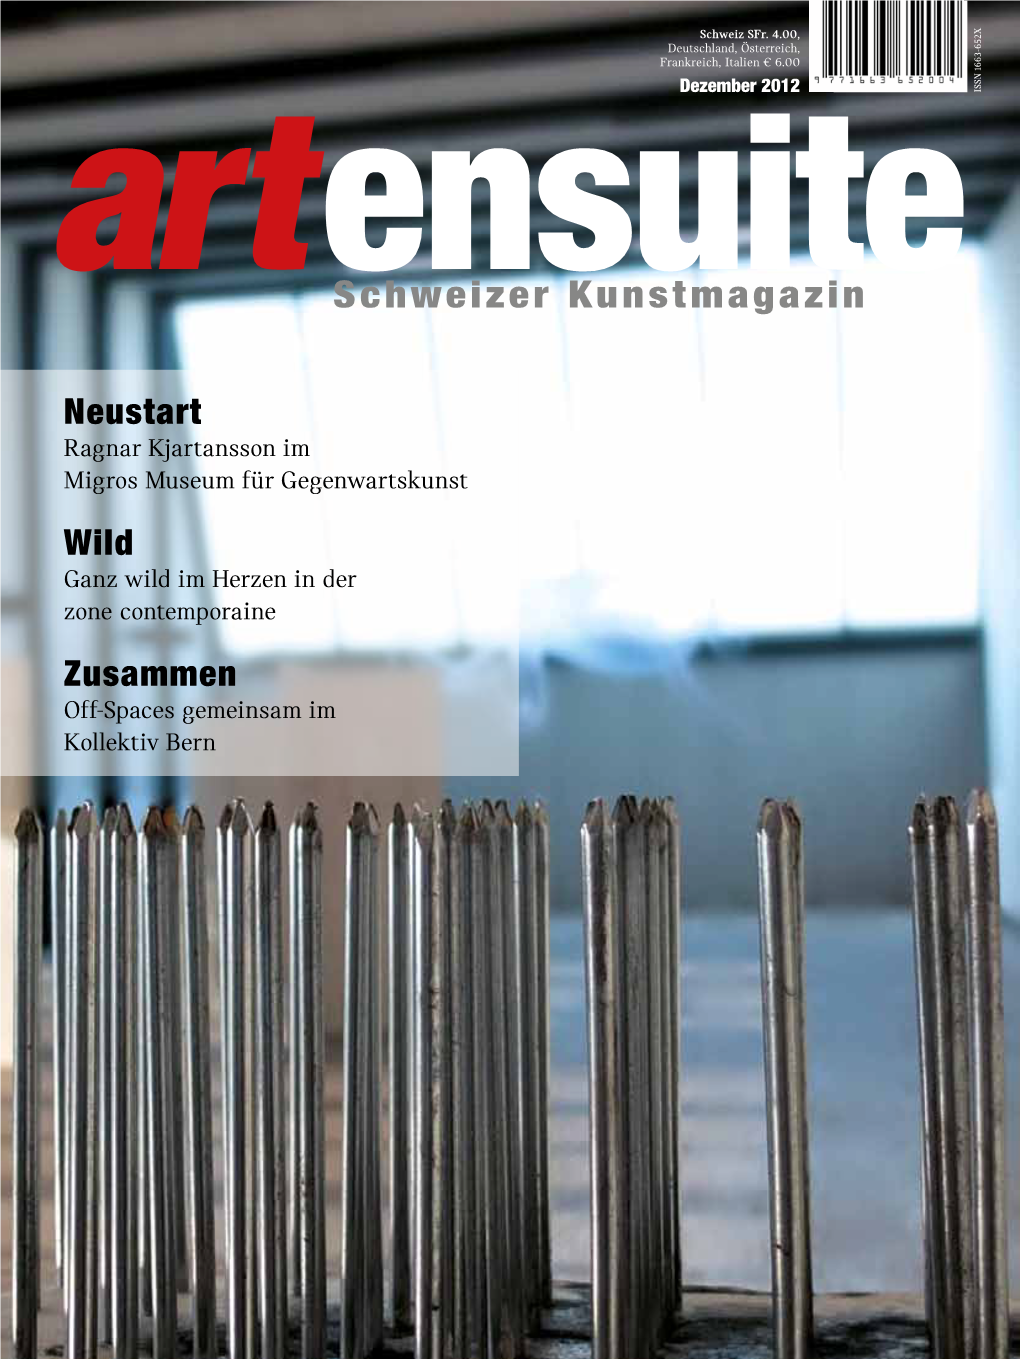 Schweizer Kunstmagazin